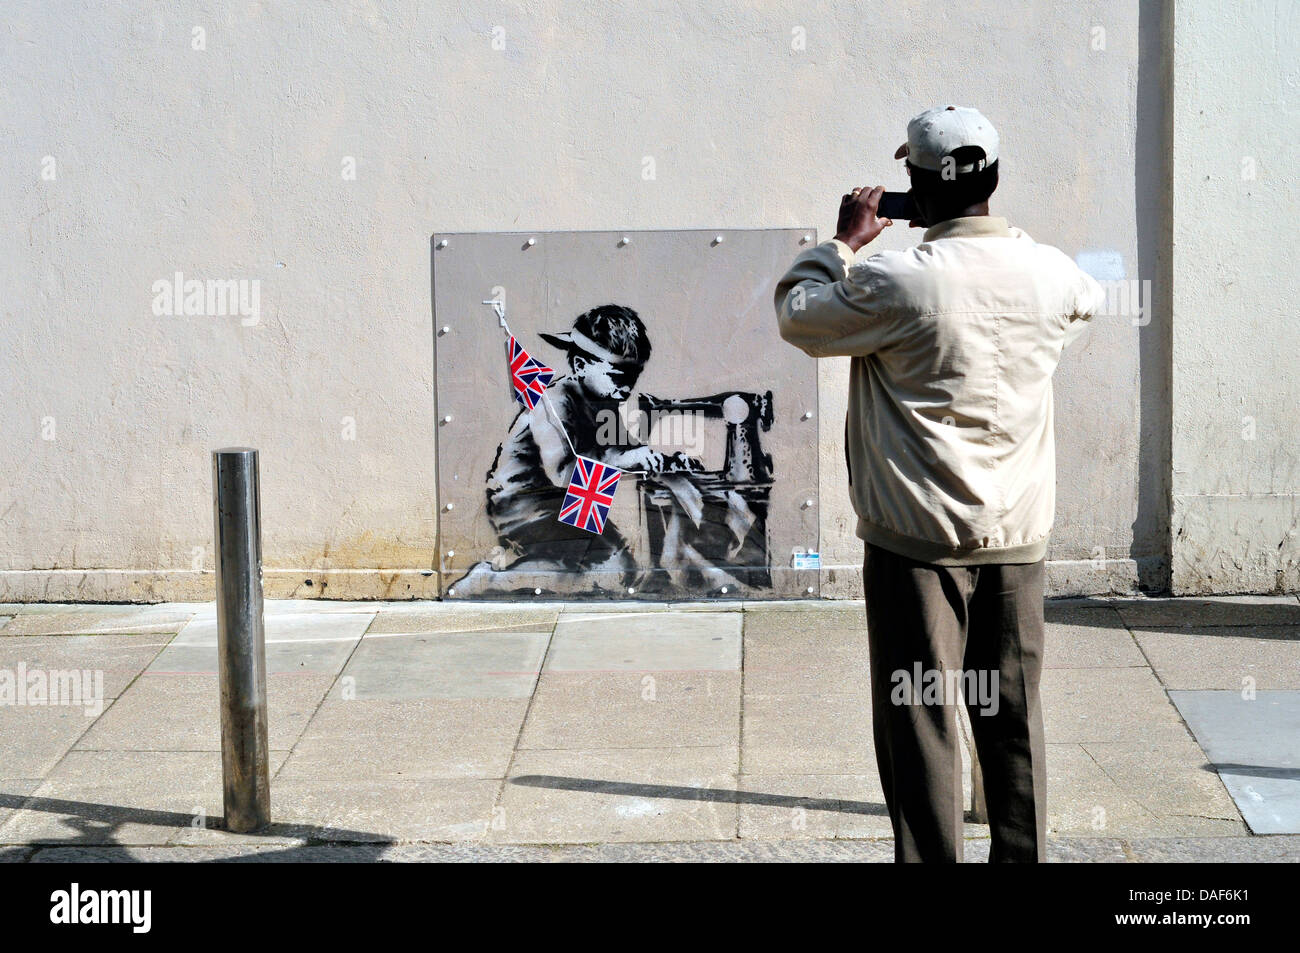 Un homme photos Banksy fresque à Turnpike Lane, London, UK Banque D'Images